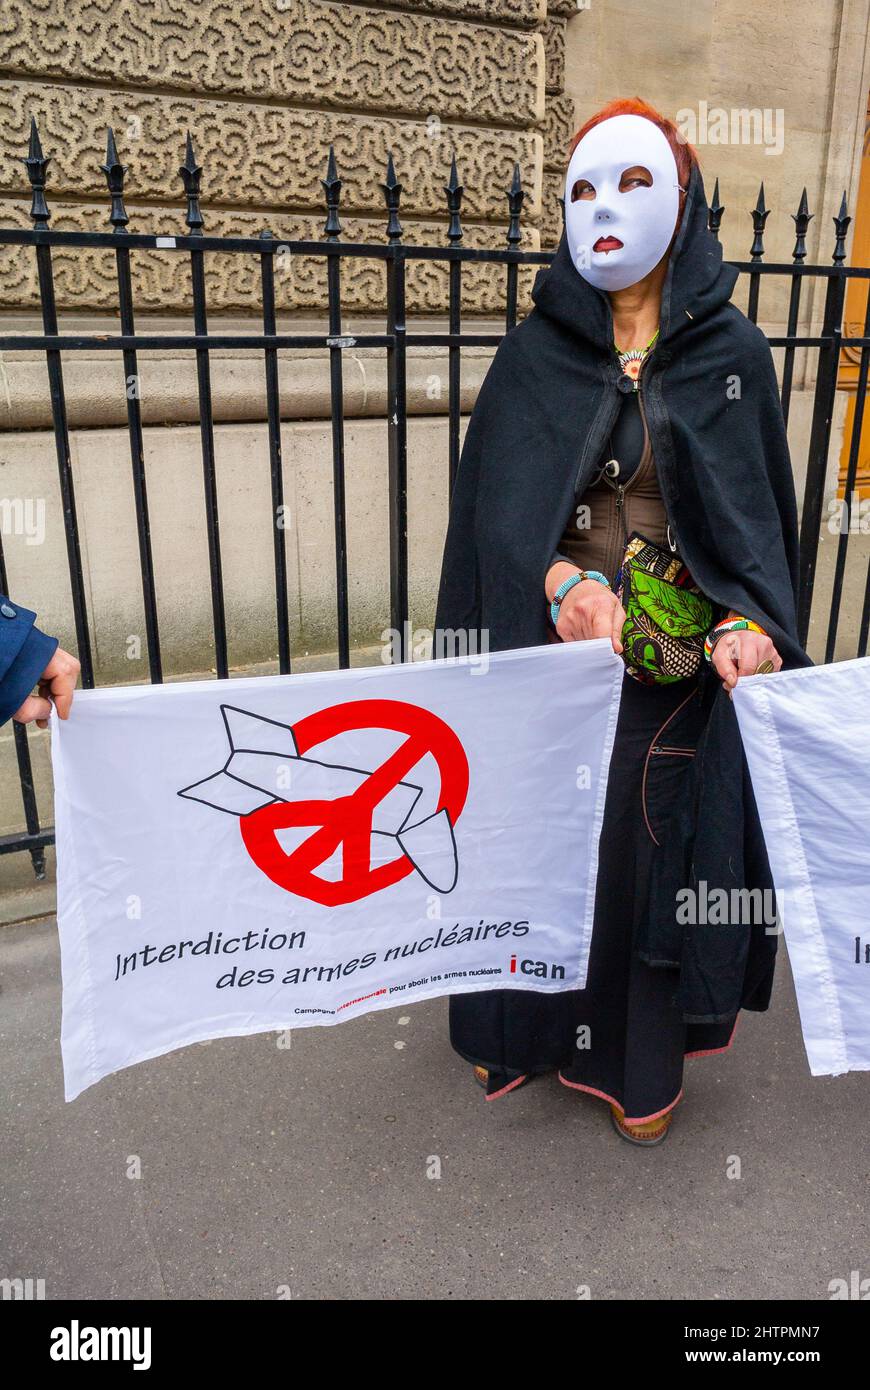 Paris, France, manifestation anti-armes nucléaires, femme au masque tenant des pancartes de protestation, politique internationale Banque D'Images